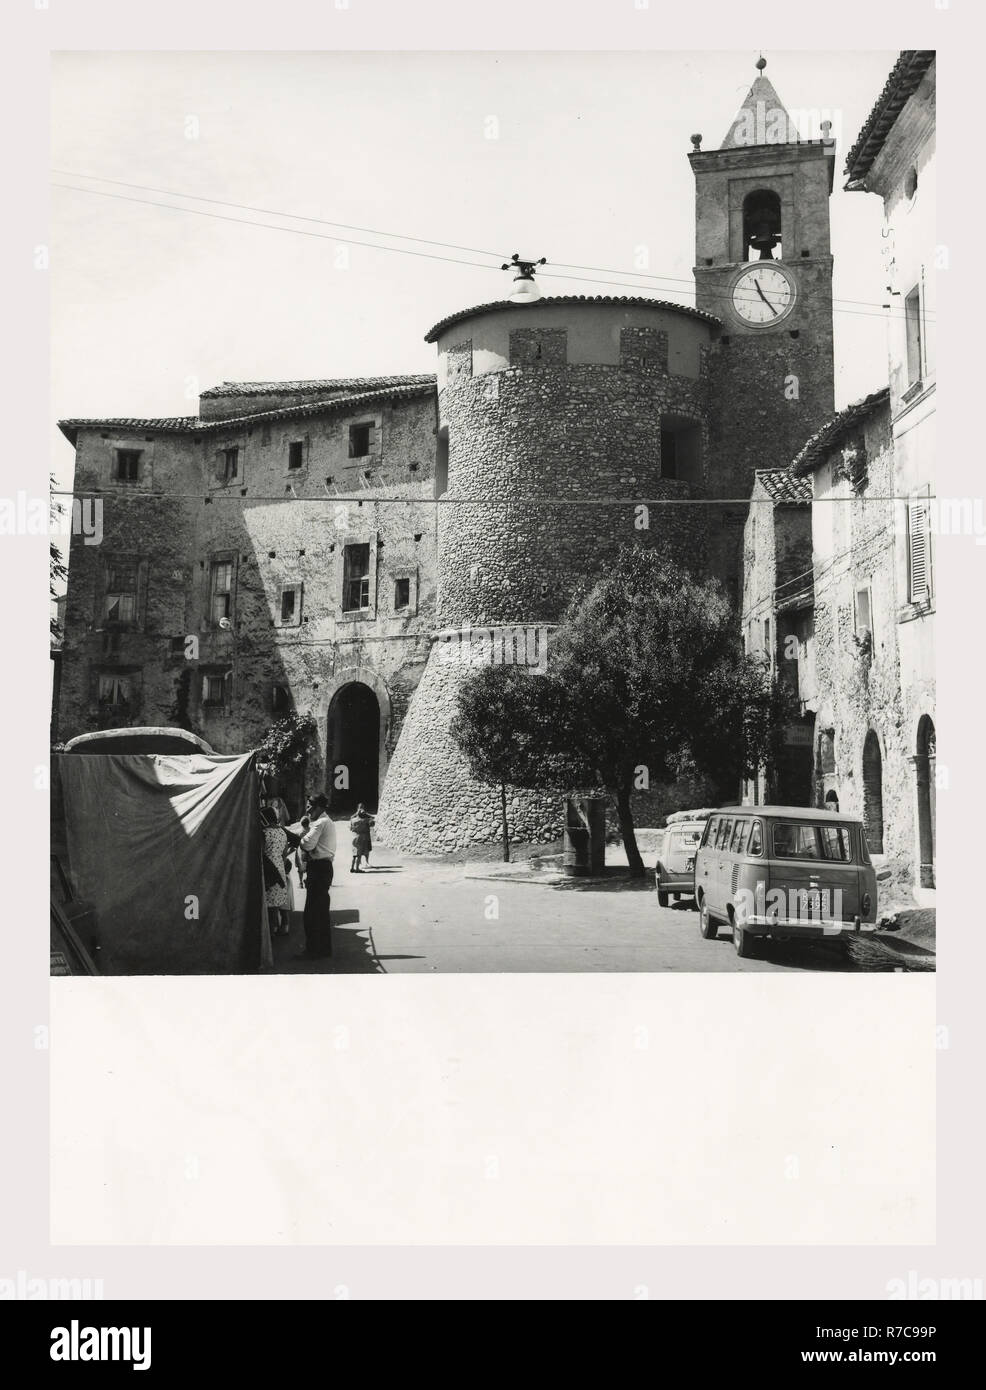 Rieti Lacio Torricella Sabina en Borgo Medievale, esta es mi Italia, el país de la historia visual, arquitectura medieval. La entrada a la ciudad medieval se abre a una gran torre circular que data del siglo XII, que formaba parte del castillo de la Brancaleone. Foto de stock